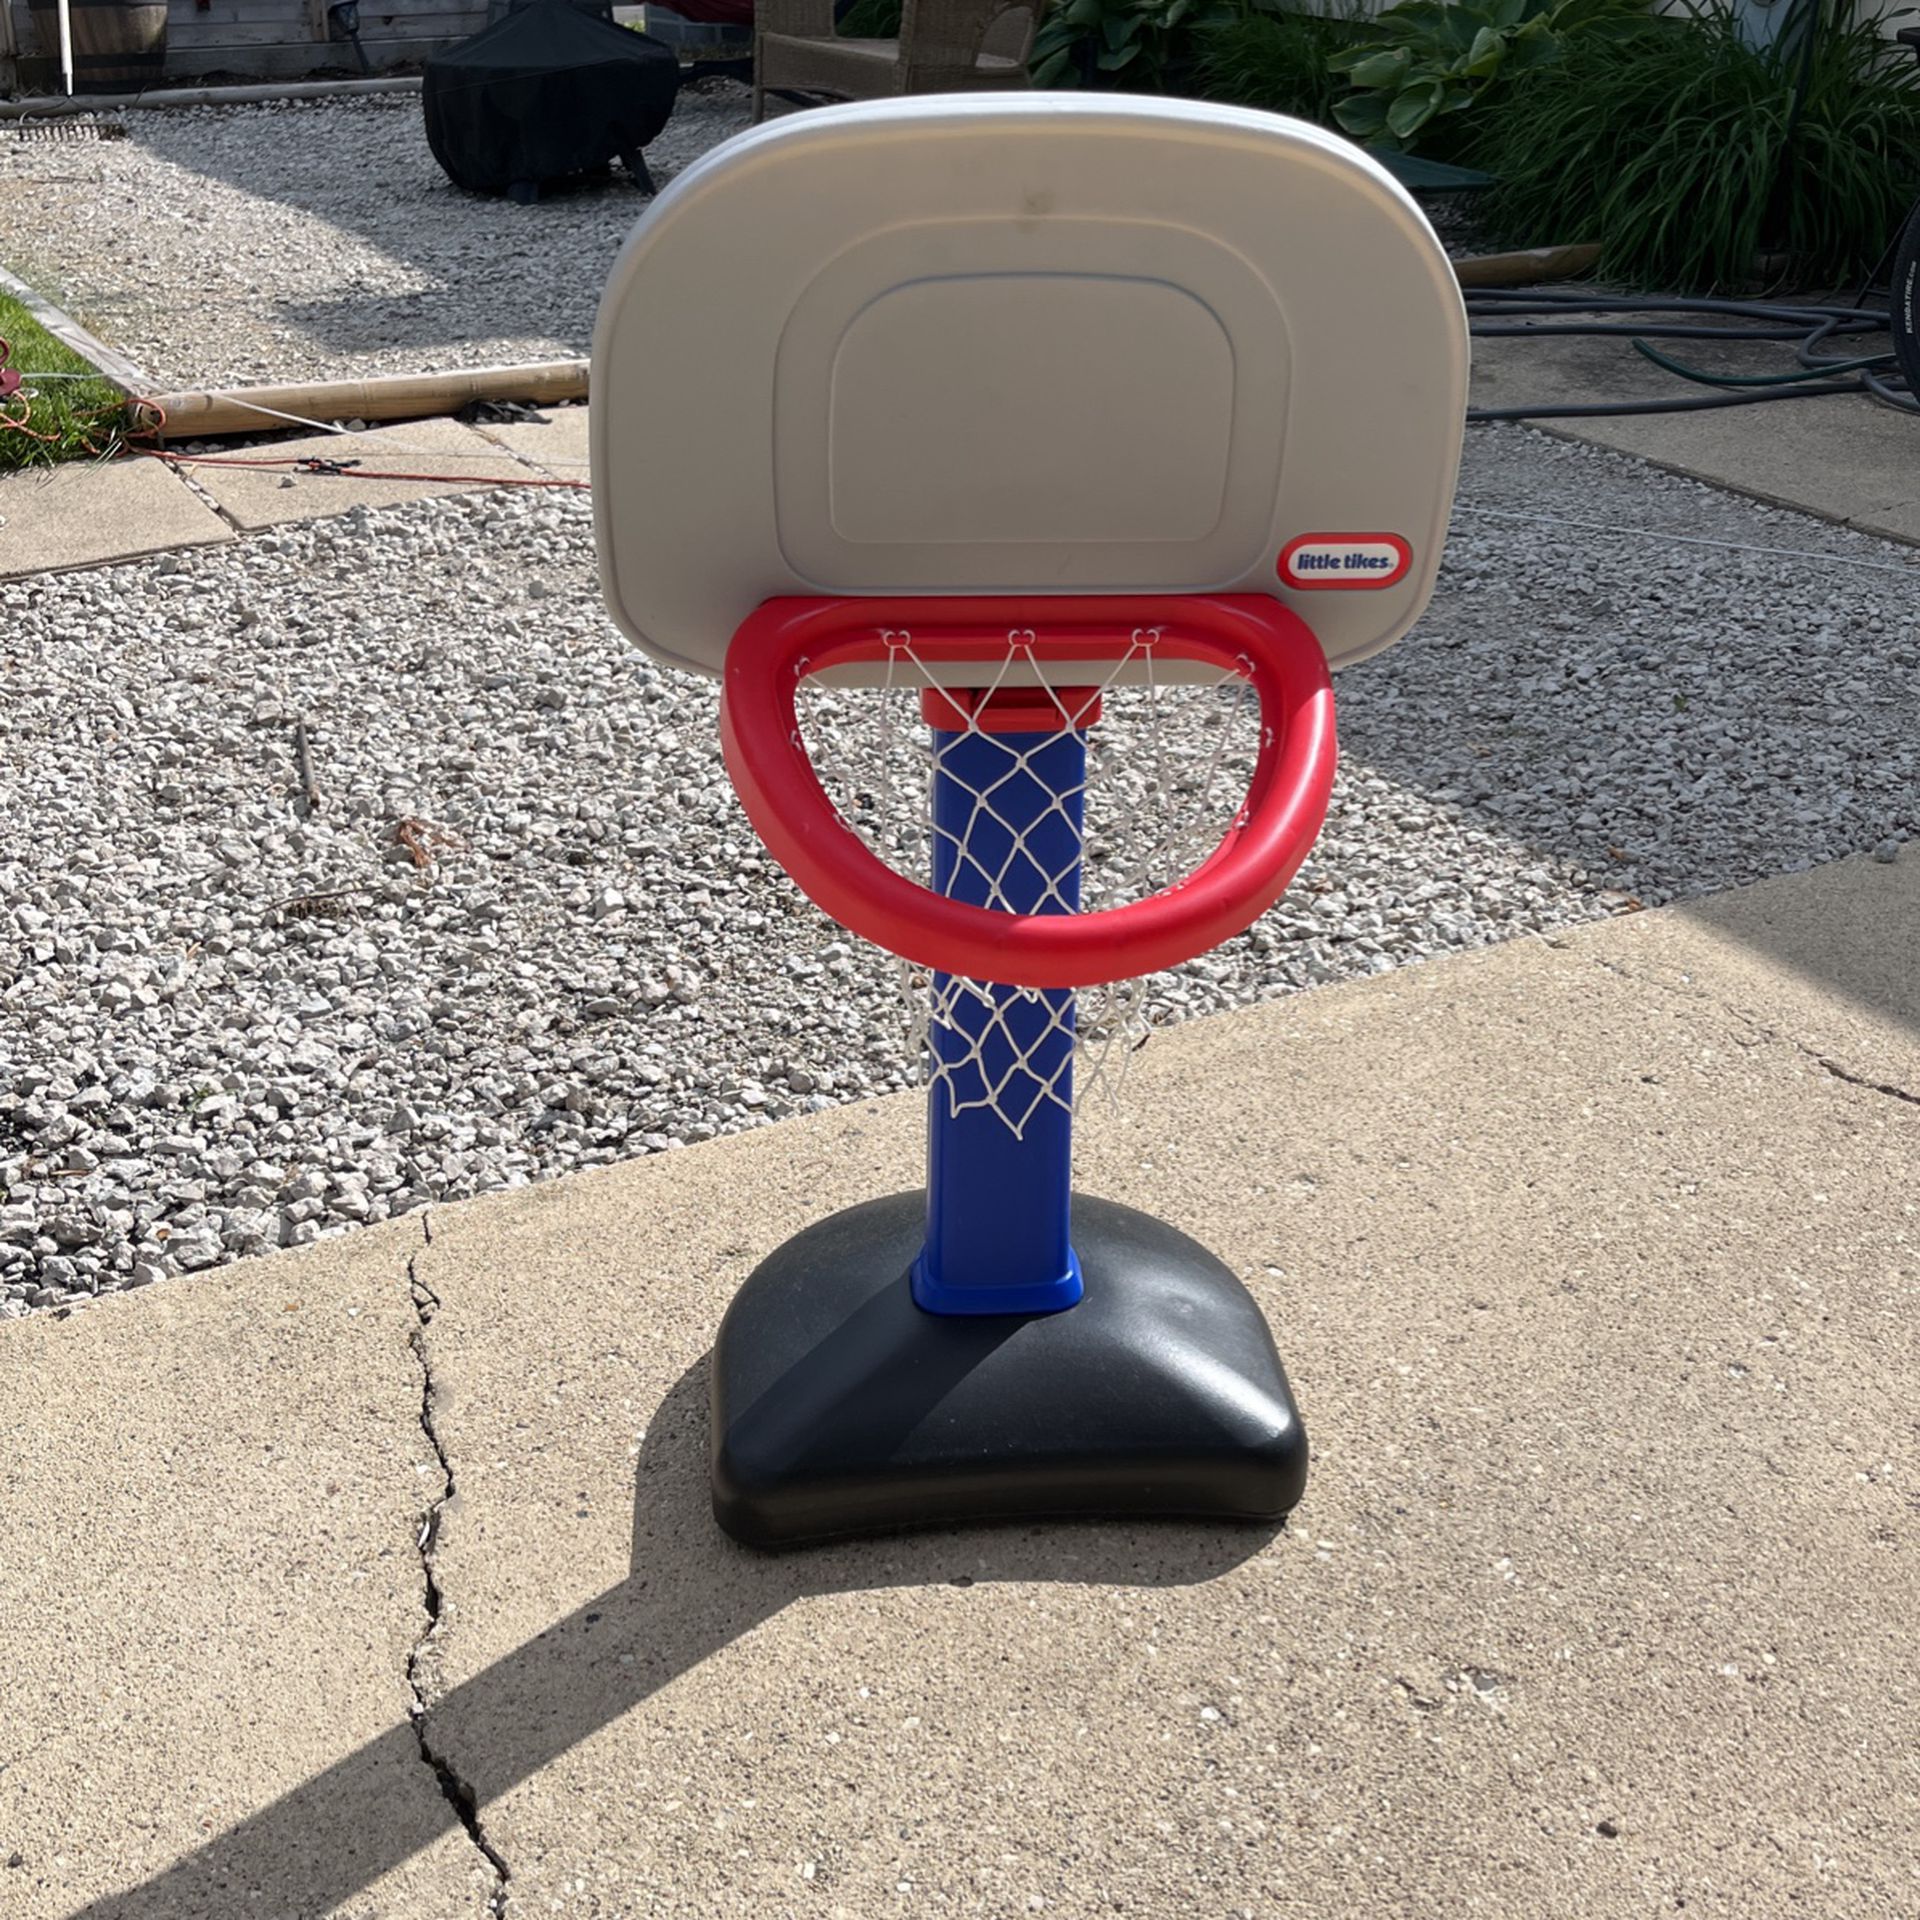 $5 Little Tikes Adjustable Basketball Hoop